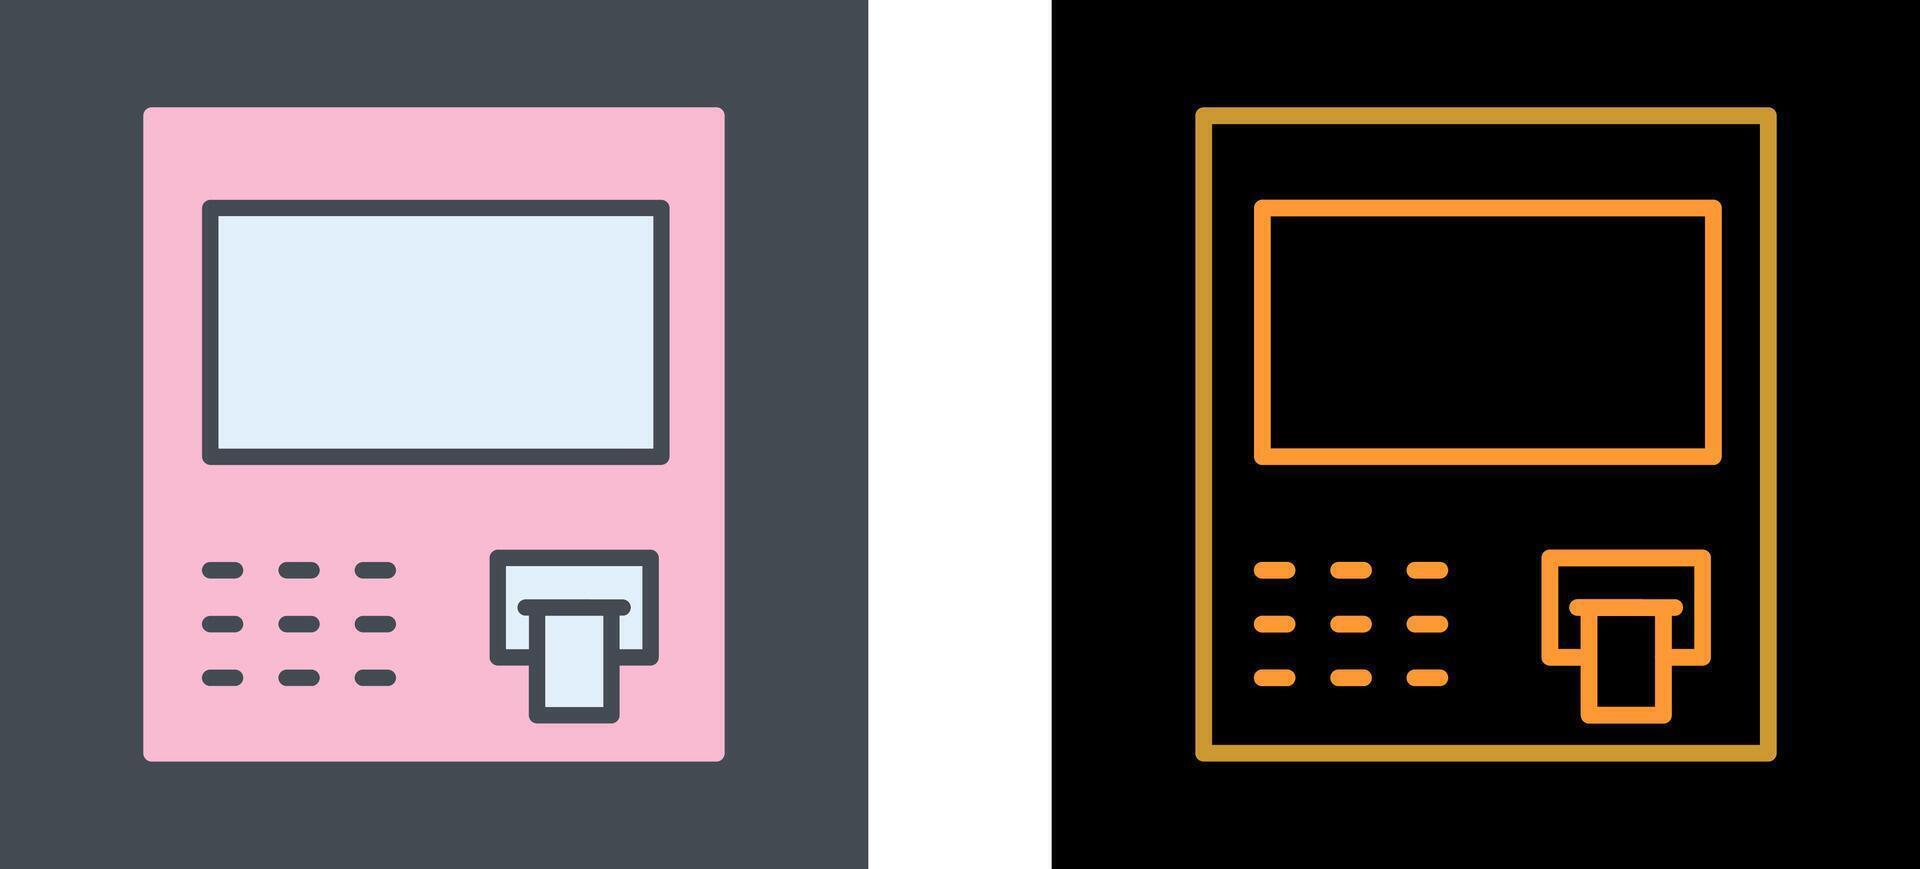 ATM Icon Design vector